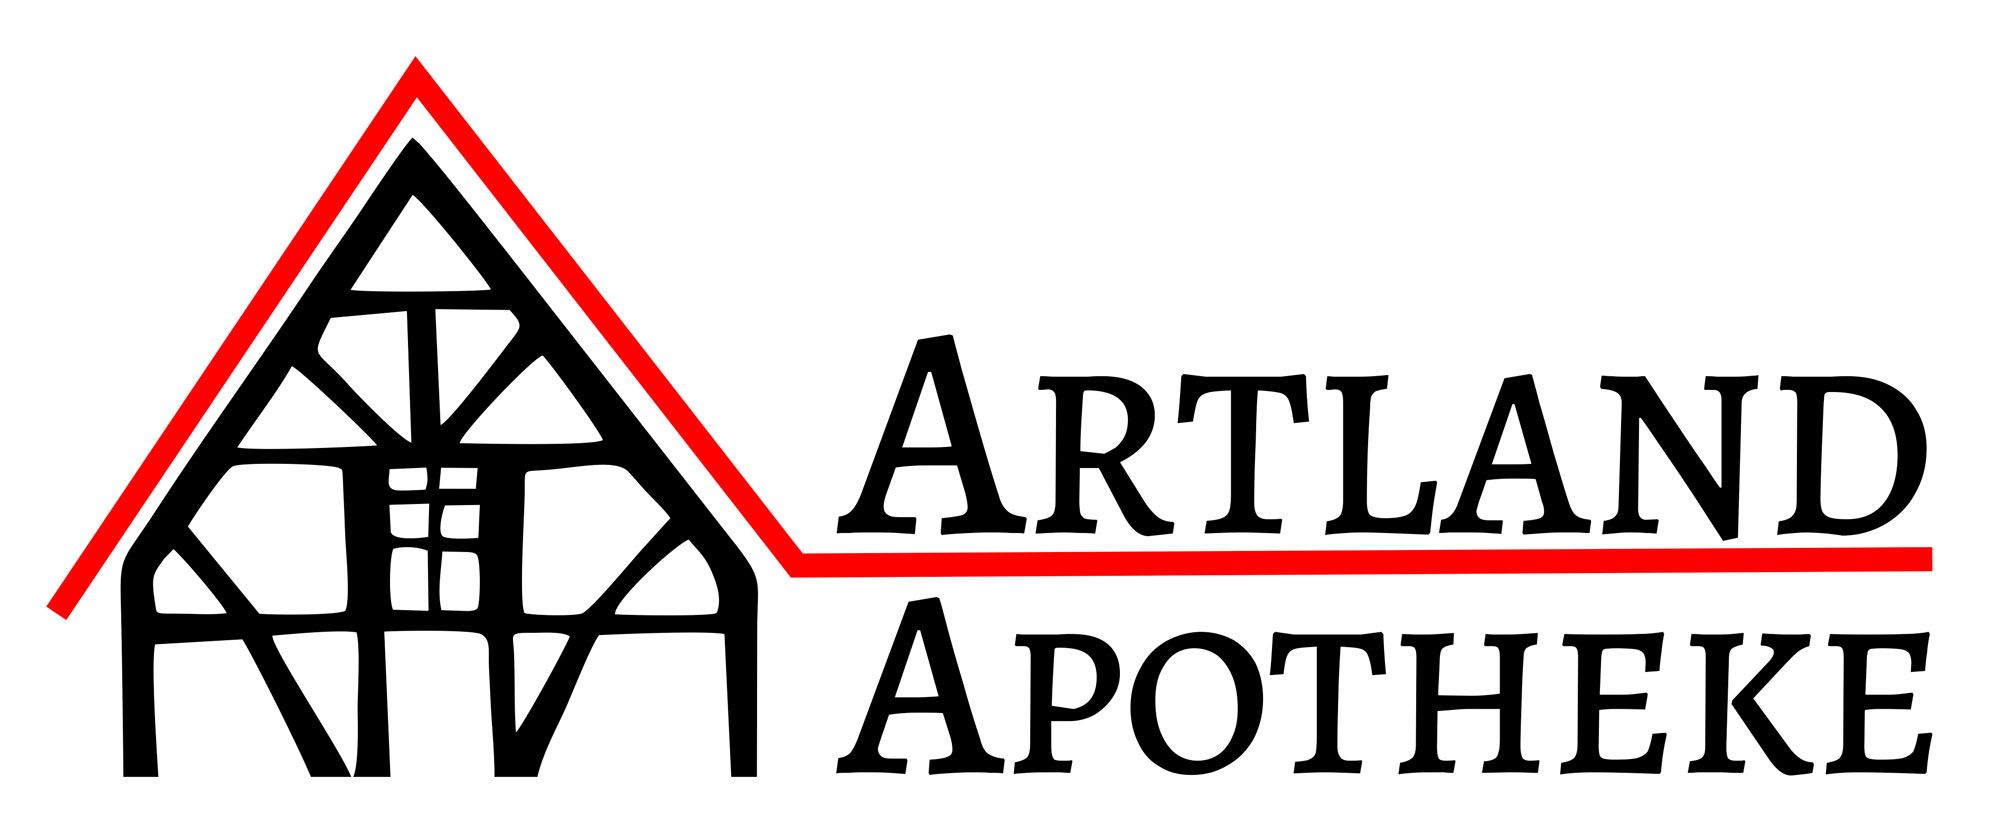 Artland Apotheke - Ihre zuverlässige Apotheke in Menslage